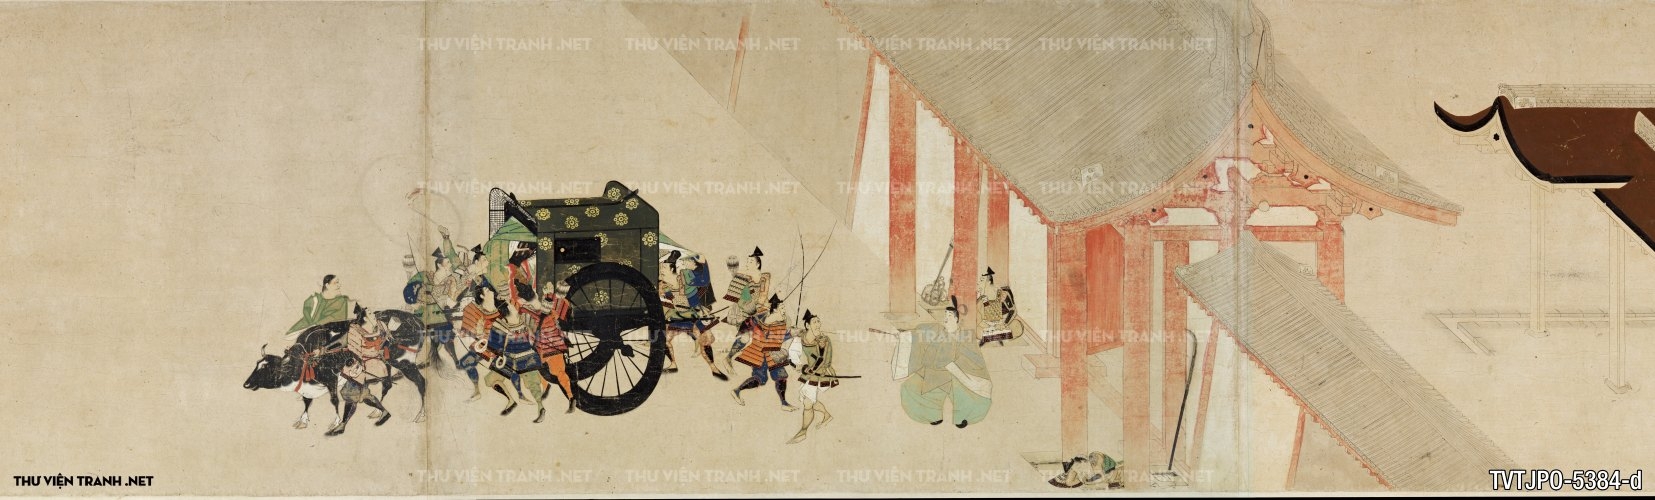 Minh họa về chuyến viếng thăm của Hoàng gia tới Rokuhara